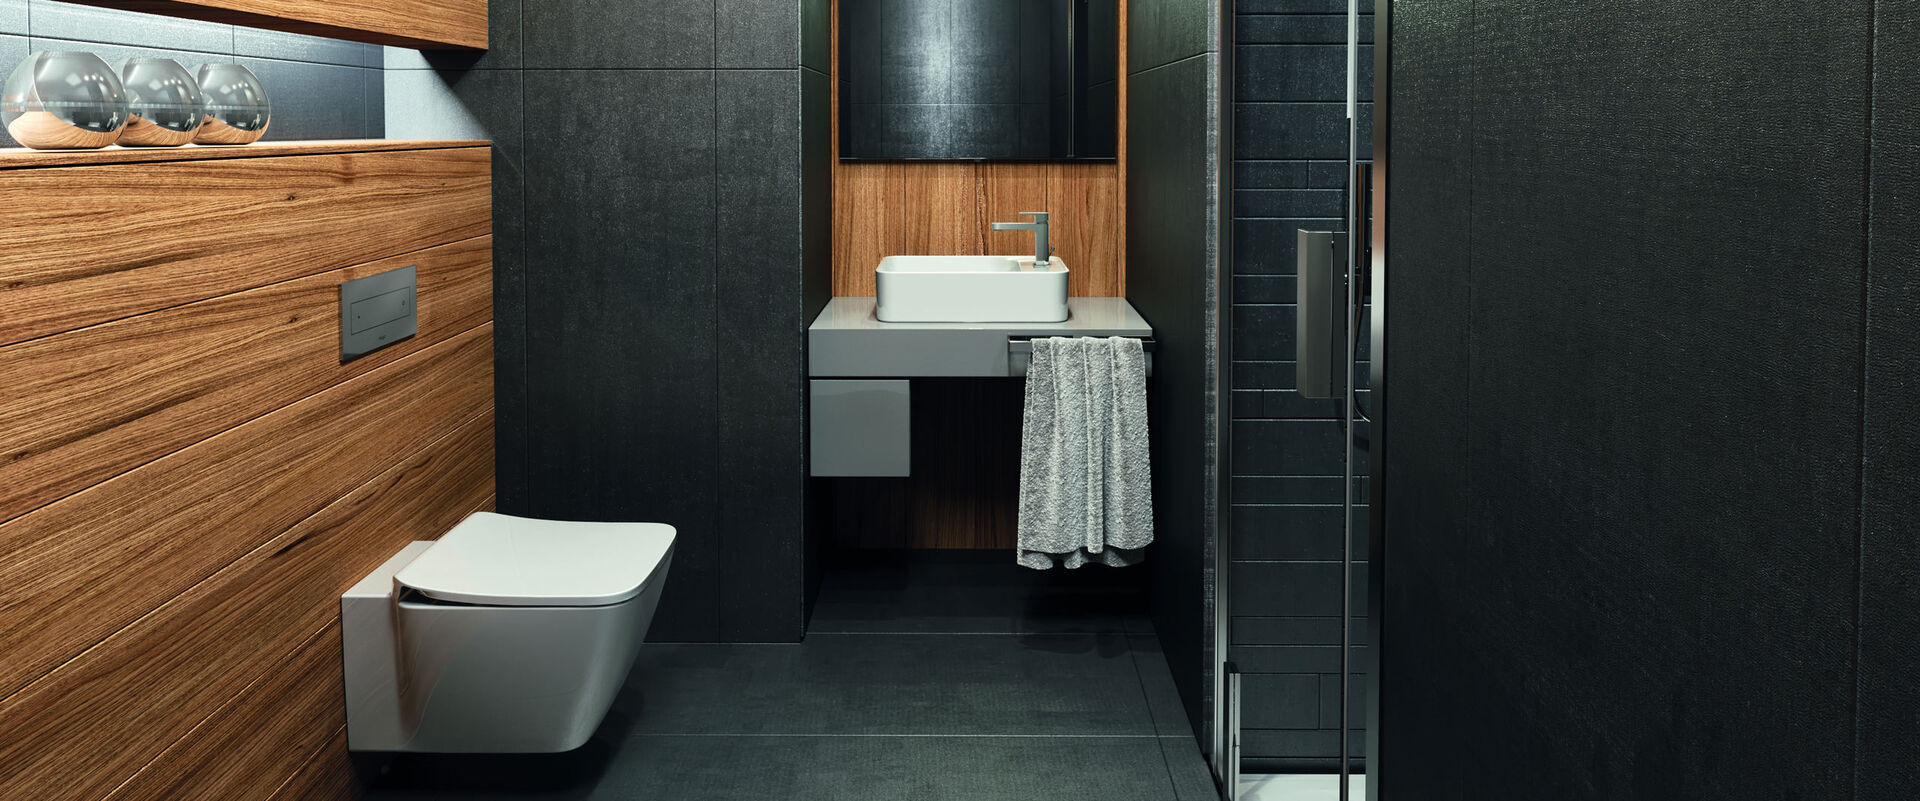 Auch in kleinen Abmessungen die Top Lösung: Hier zu sehen die Konsole Adapto von Ideal Standard mit Aufsatzwaschtisch in einem eleganten Gäste-WC mit Holzoptik.